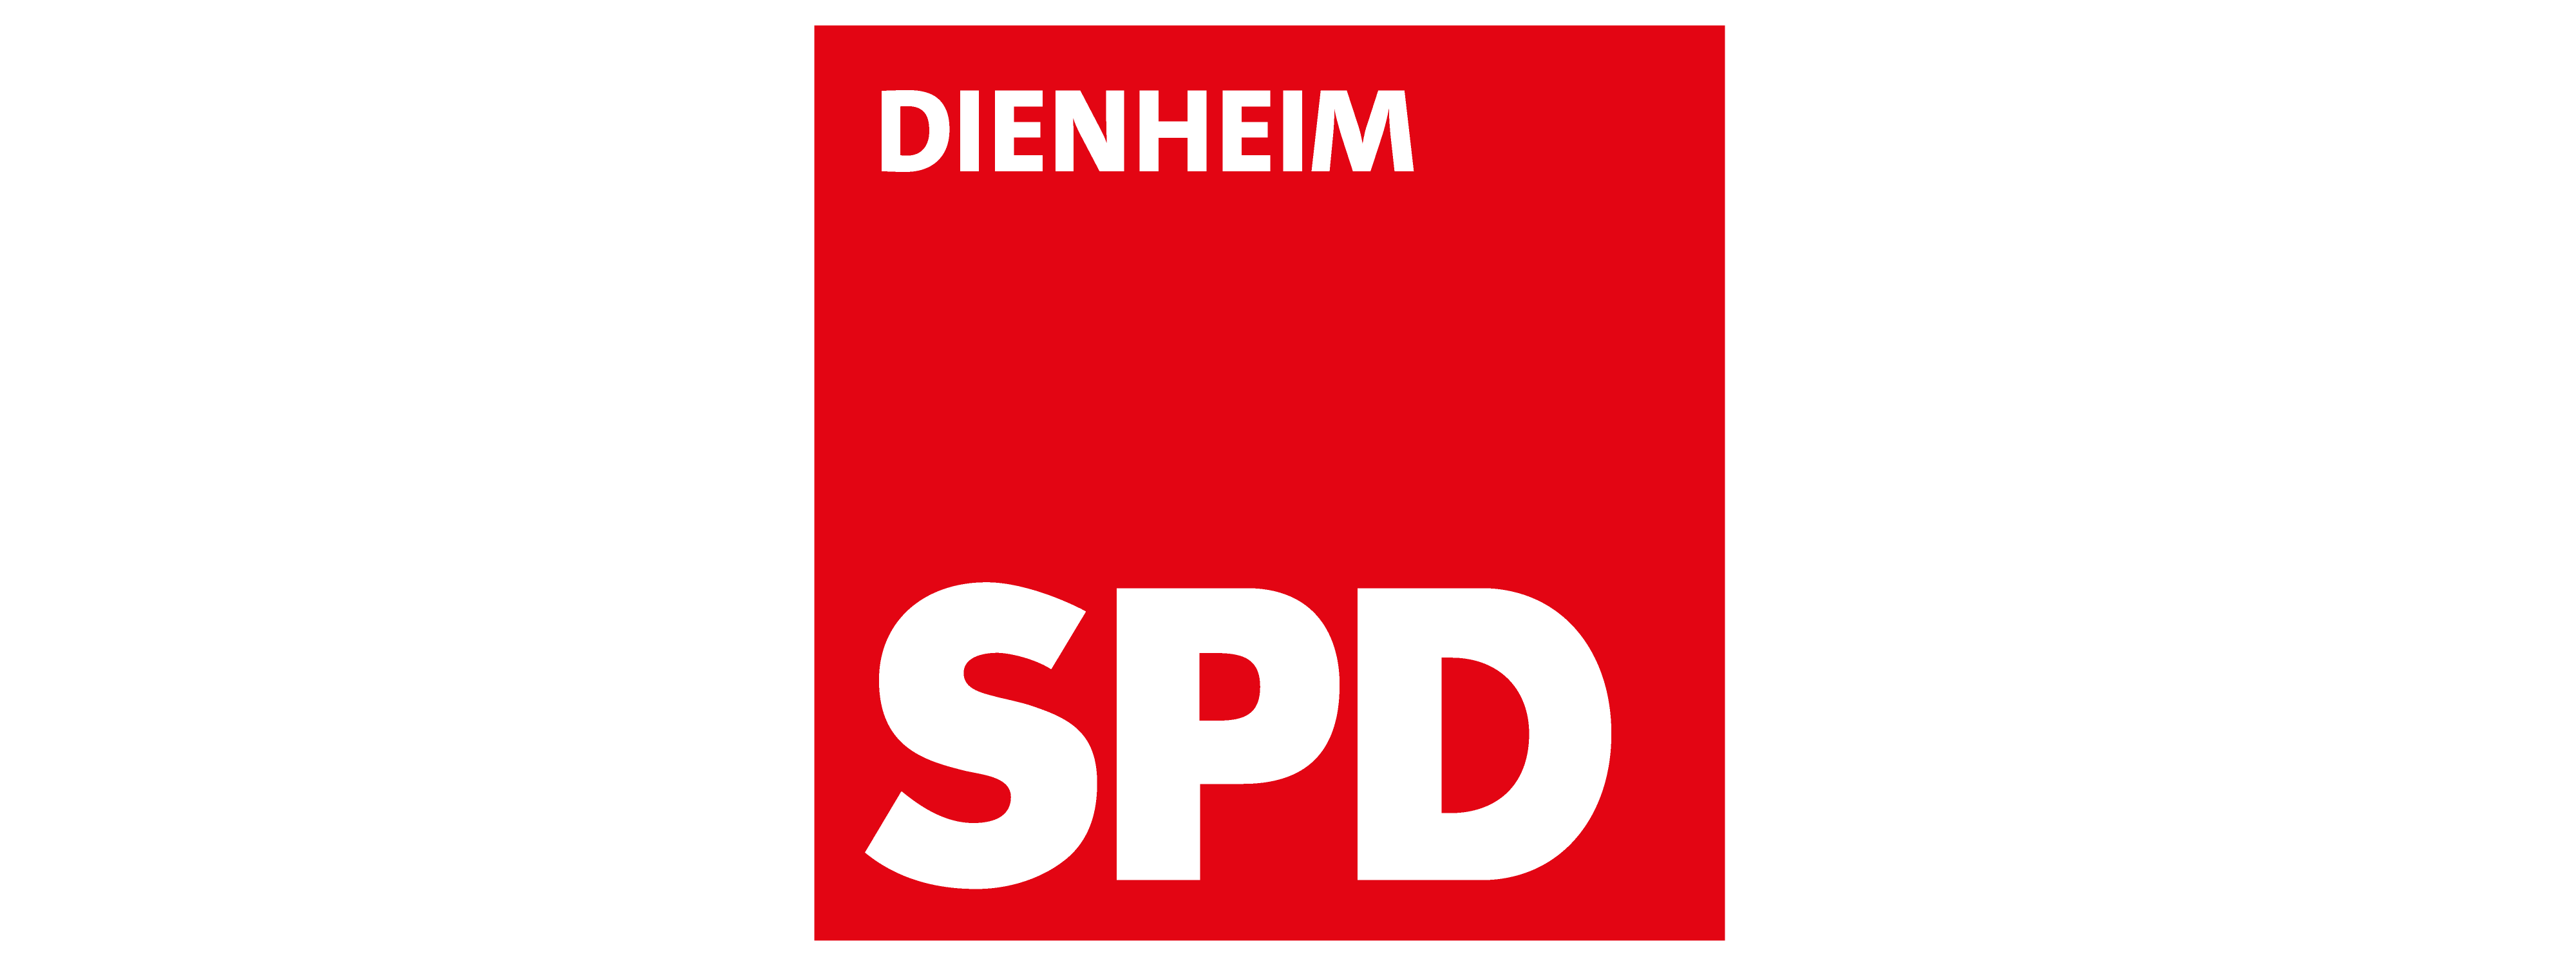 (c) Spd-dienheim.de